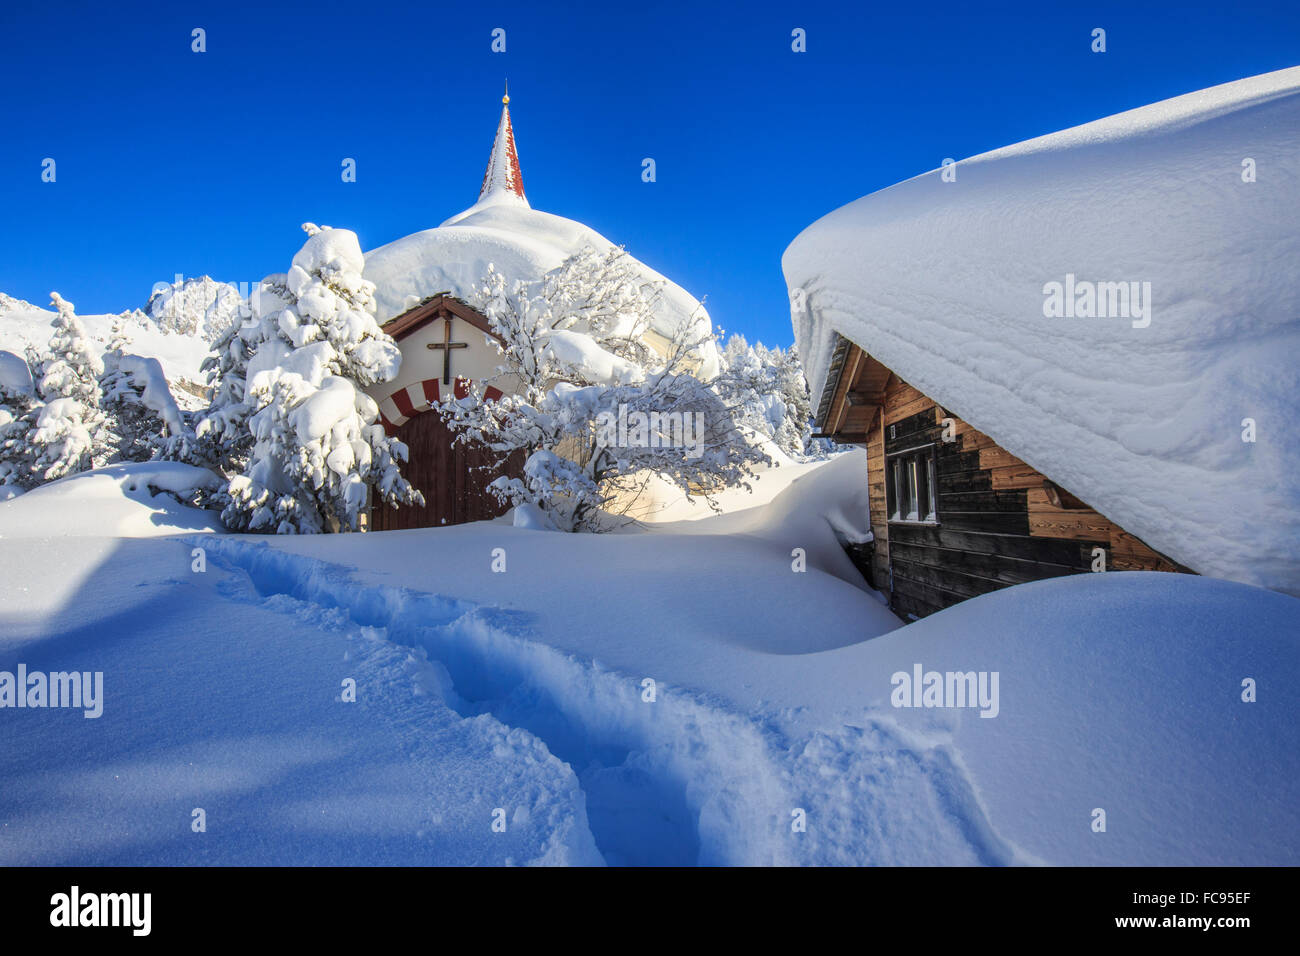 Die kleine Kirche und das Haus unter Wasser durch Schnee nach einem Schneefall in Maloja, Engadin, Graubünden, Schweiz Stockfoto